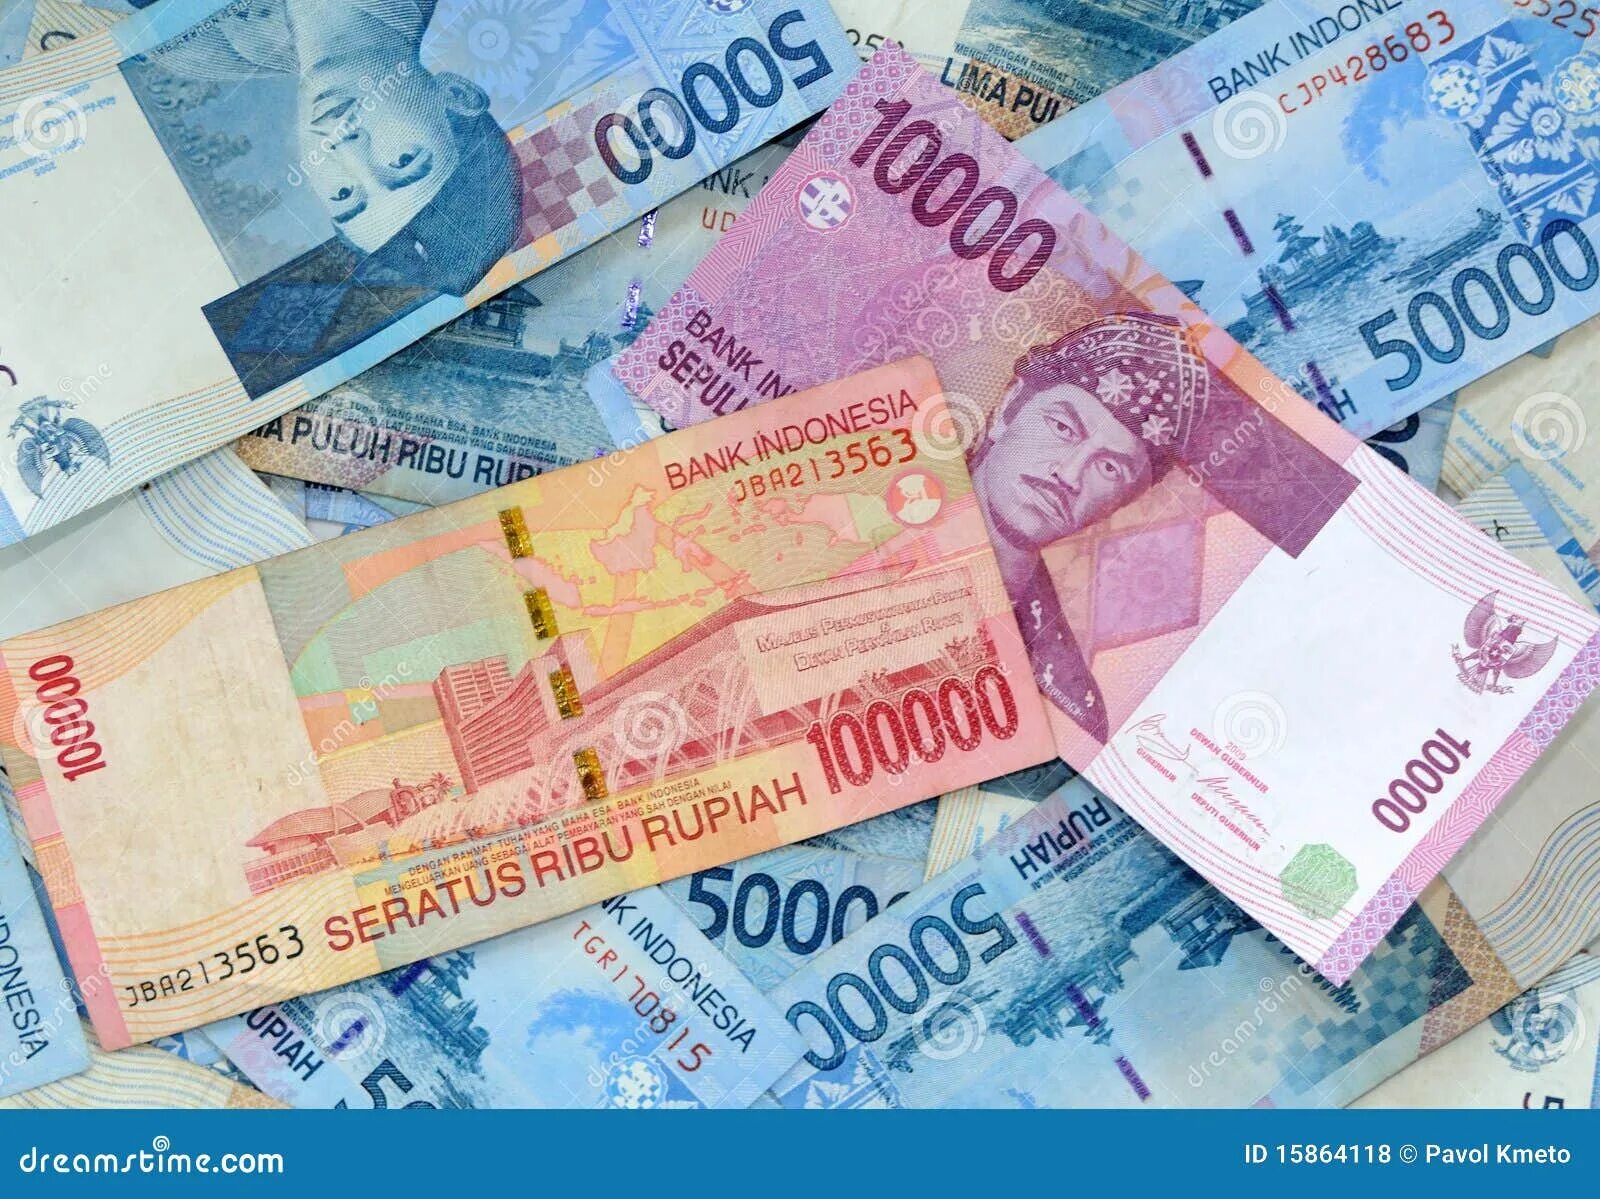 Idr в рублях. Индонезийская рупия. Индонезийская валюта. Балийские рупии. Индонезийская рупия (IDR).